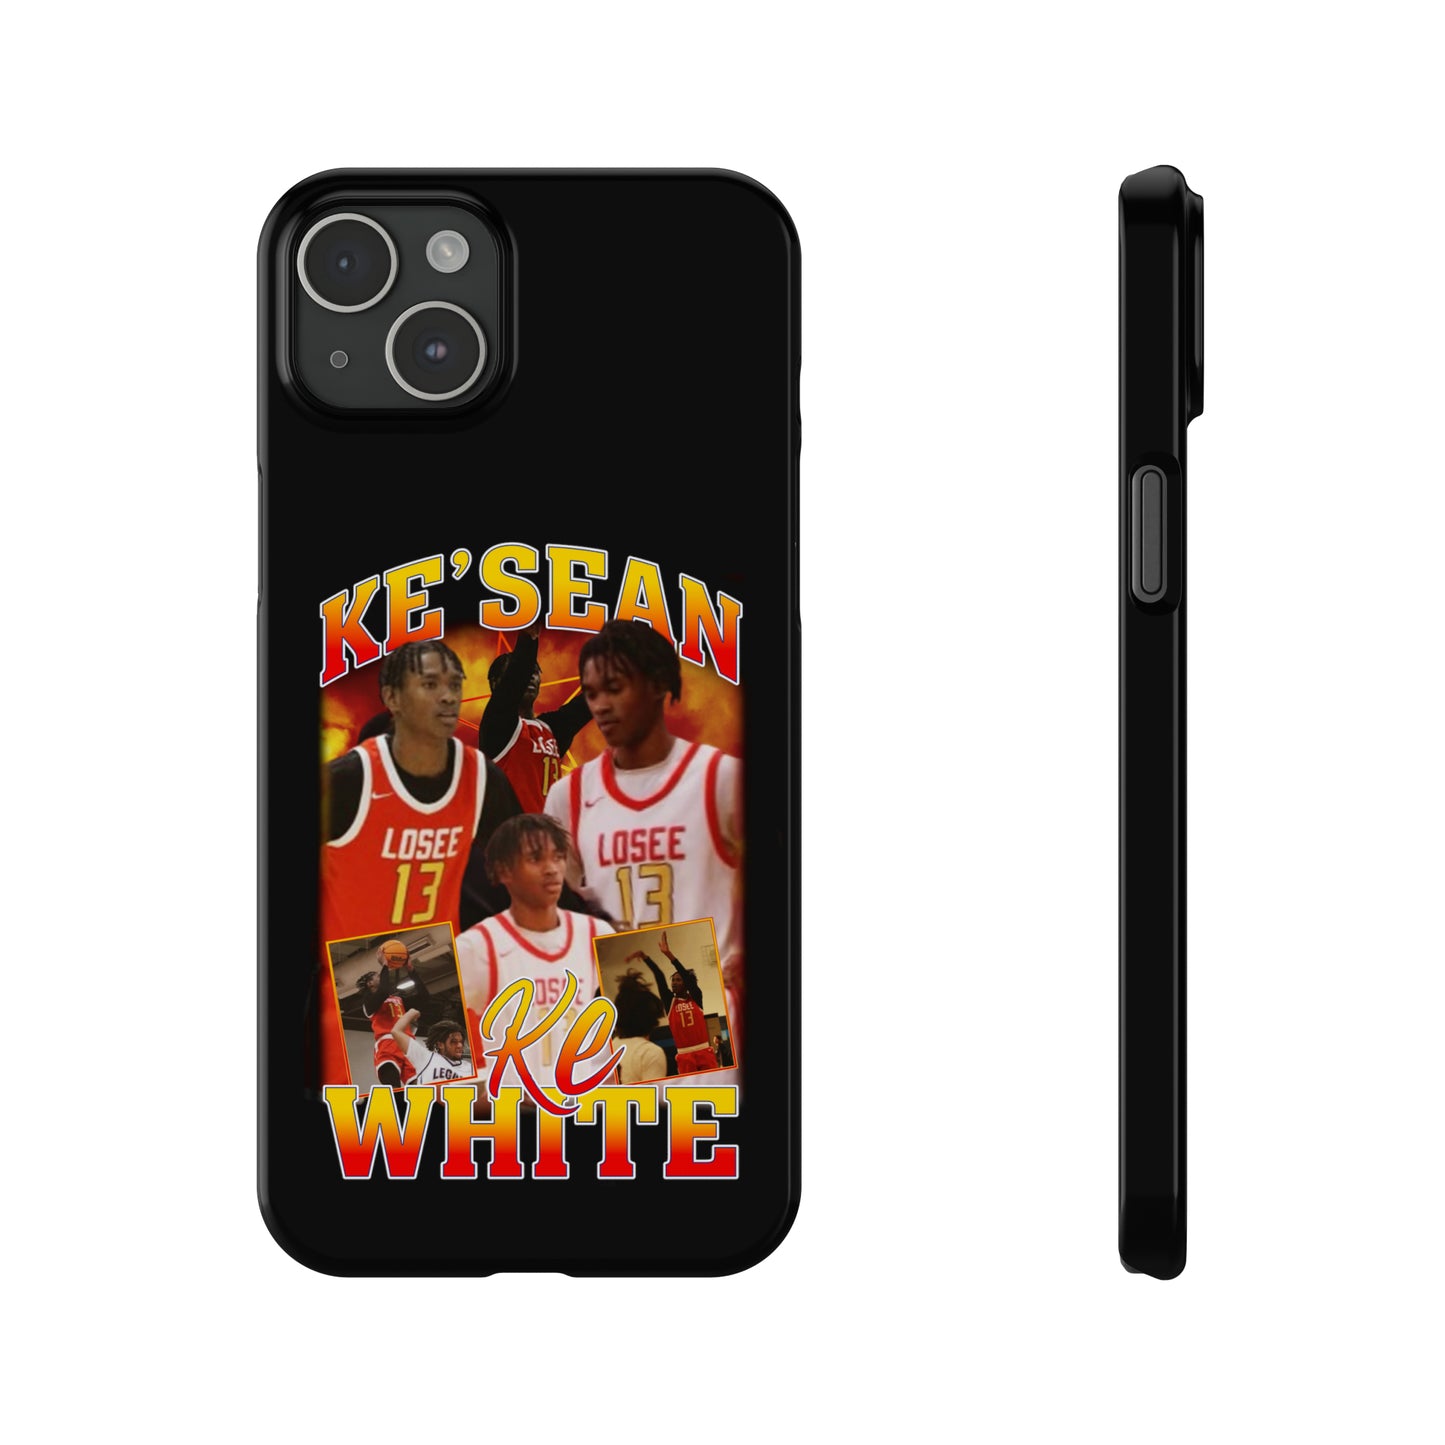 Ke'sean White Phone Case